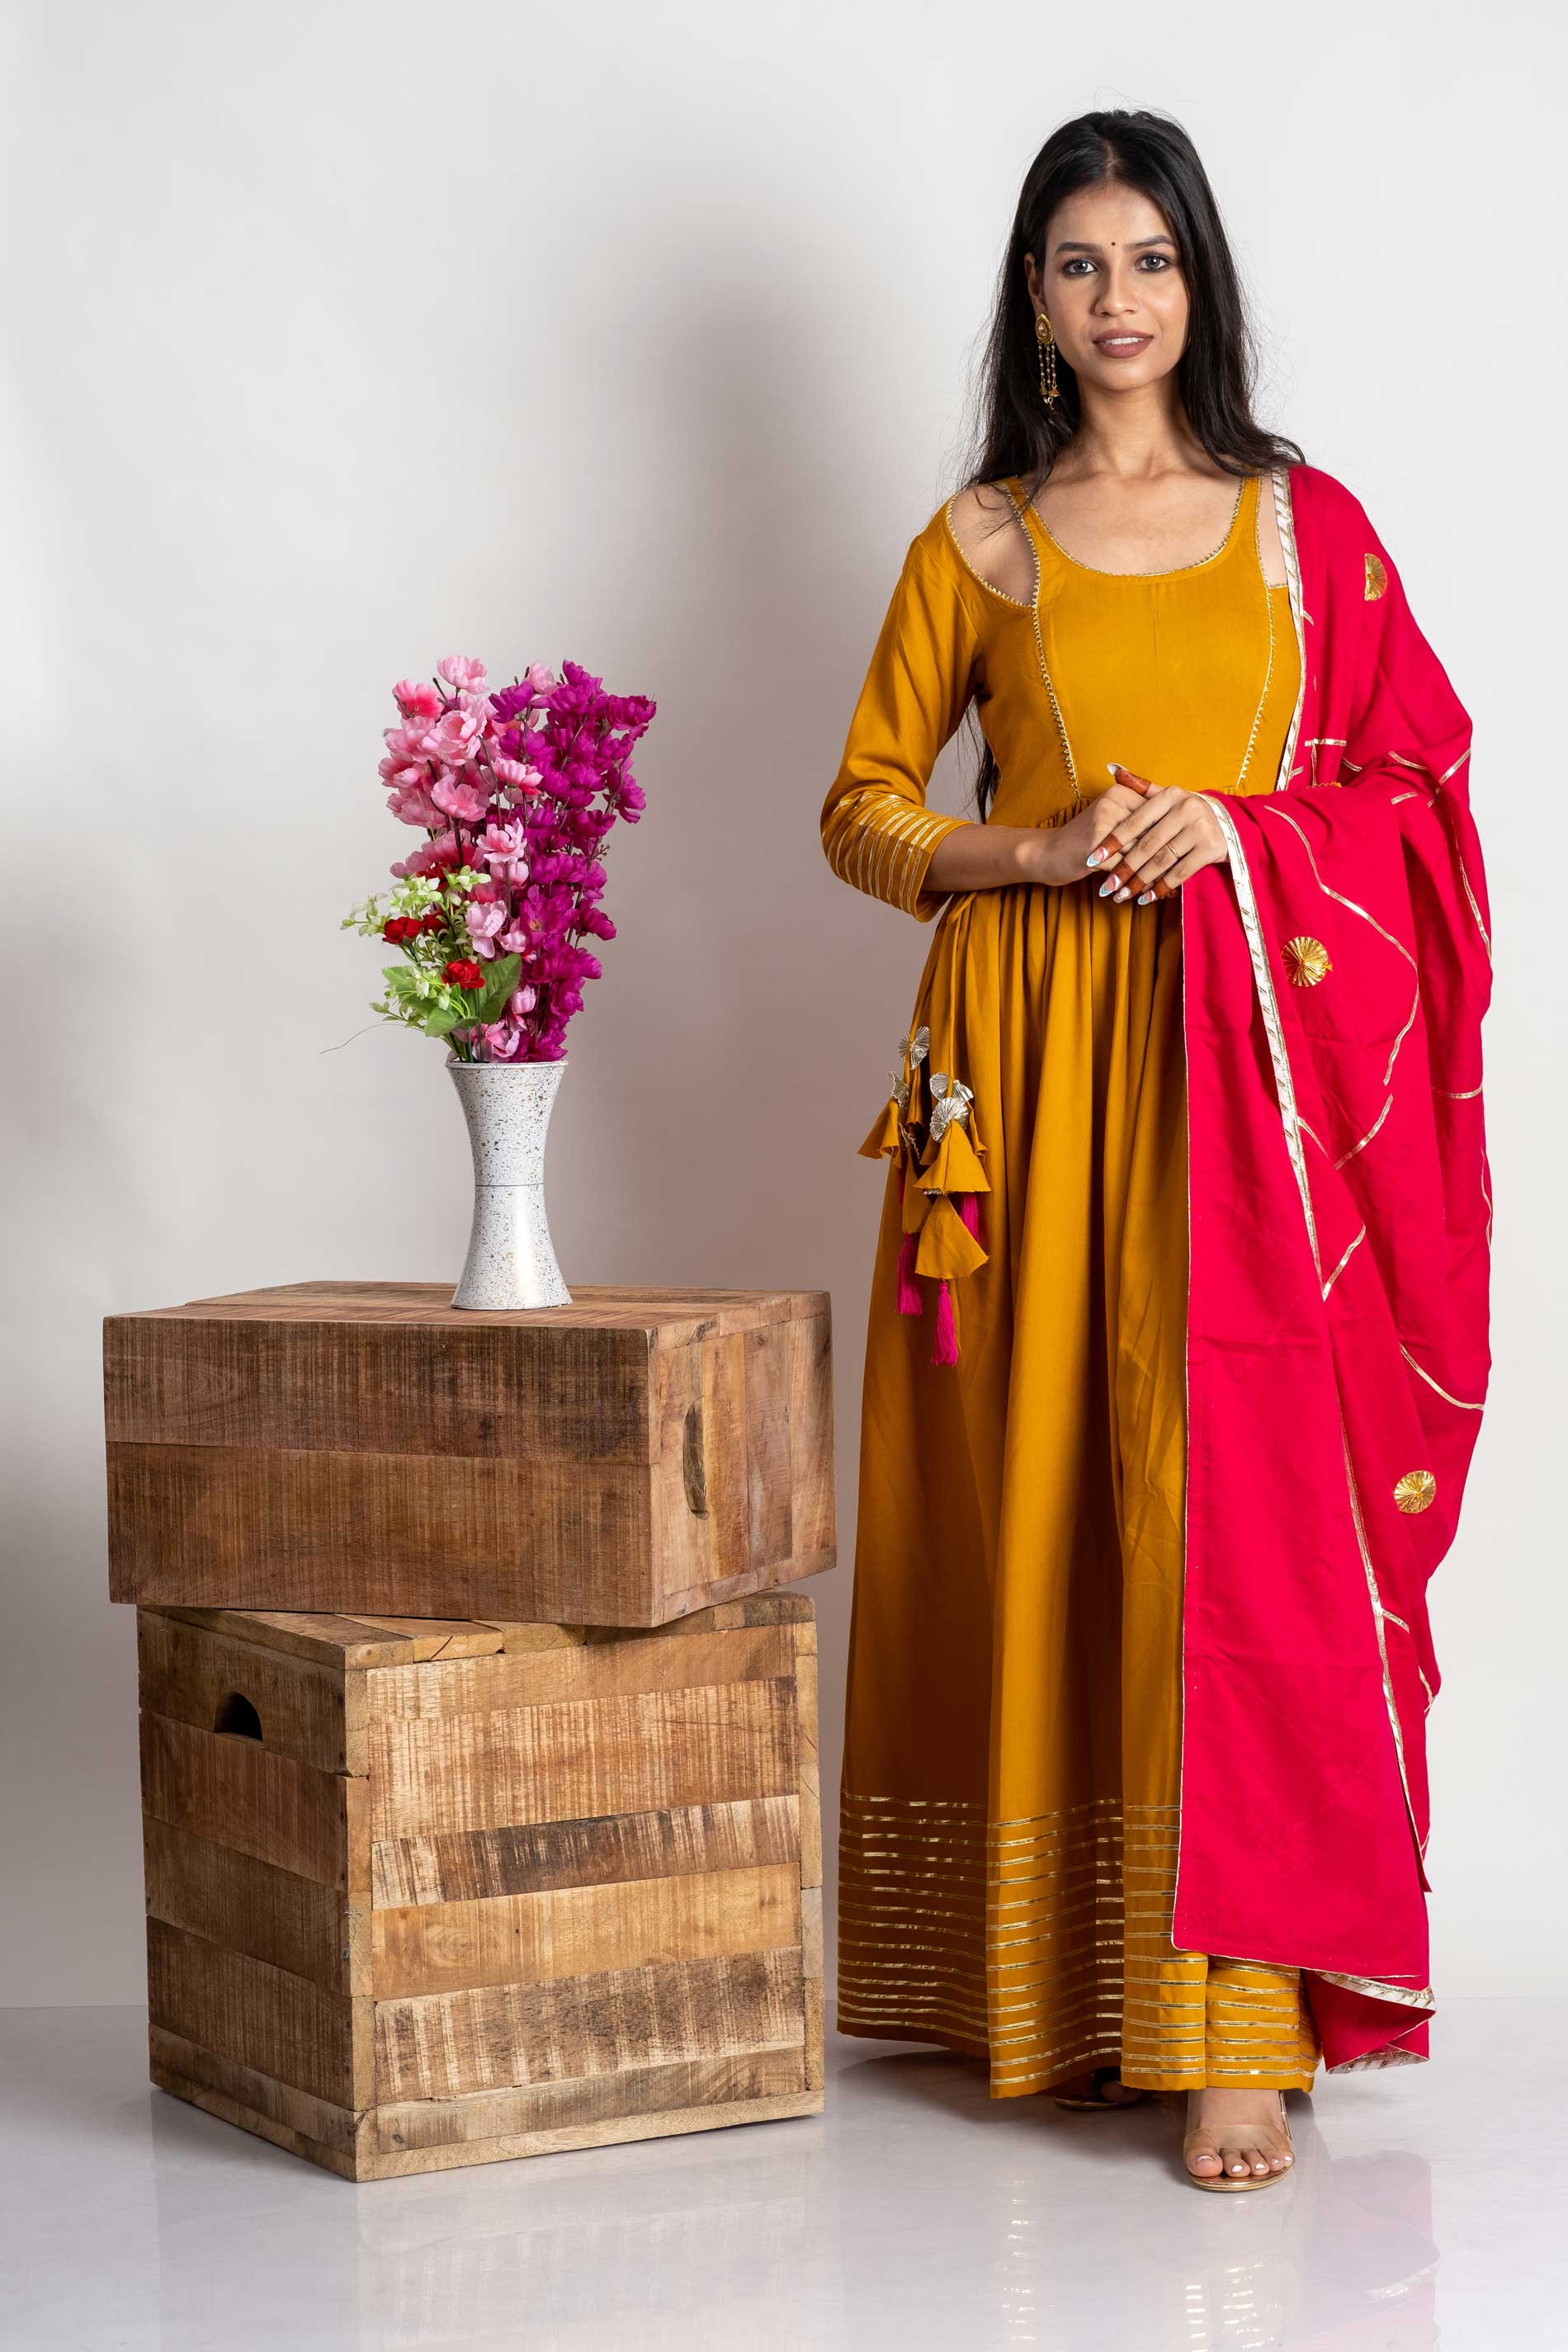 Top 30 Plain Punjabi Suits with Contrast Dupatta Latest #punjabisuits Color  Combination Ideas (18) | Combination fashion, Lace suit, Dress indian style